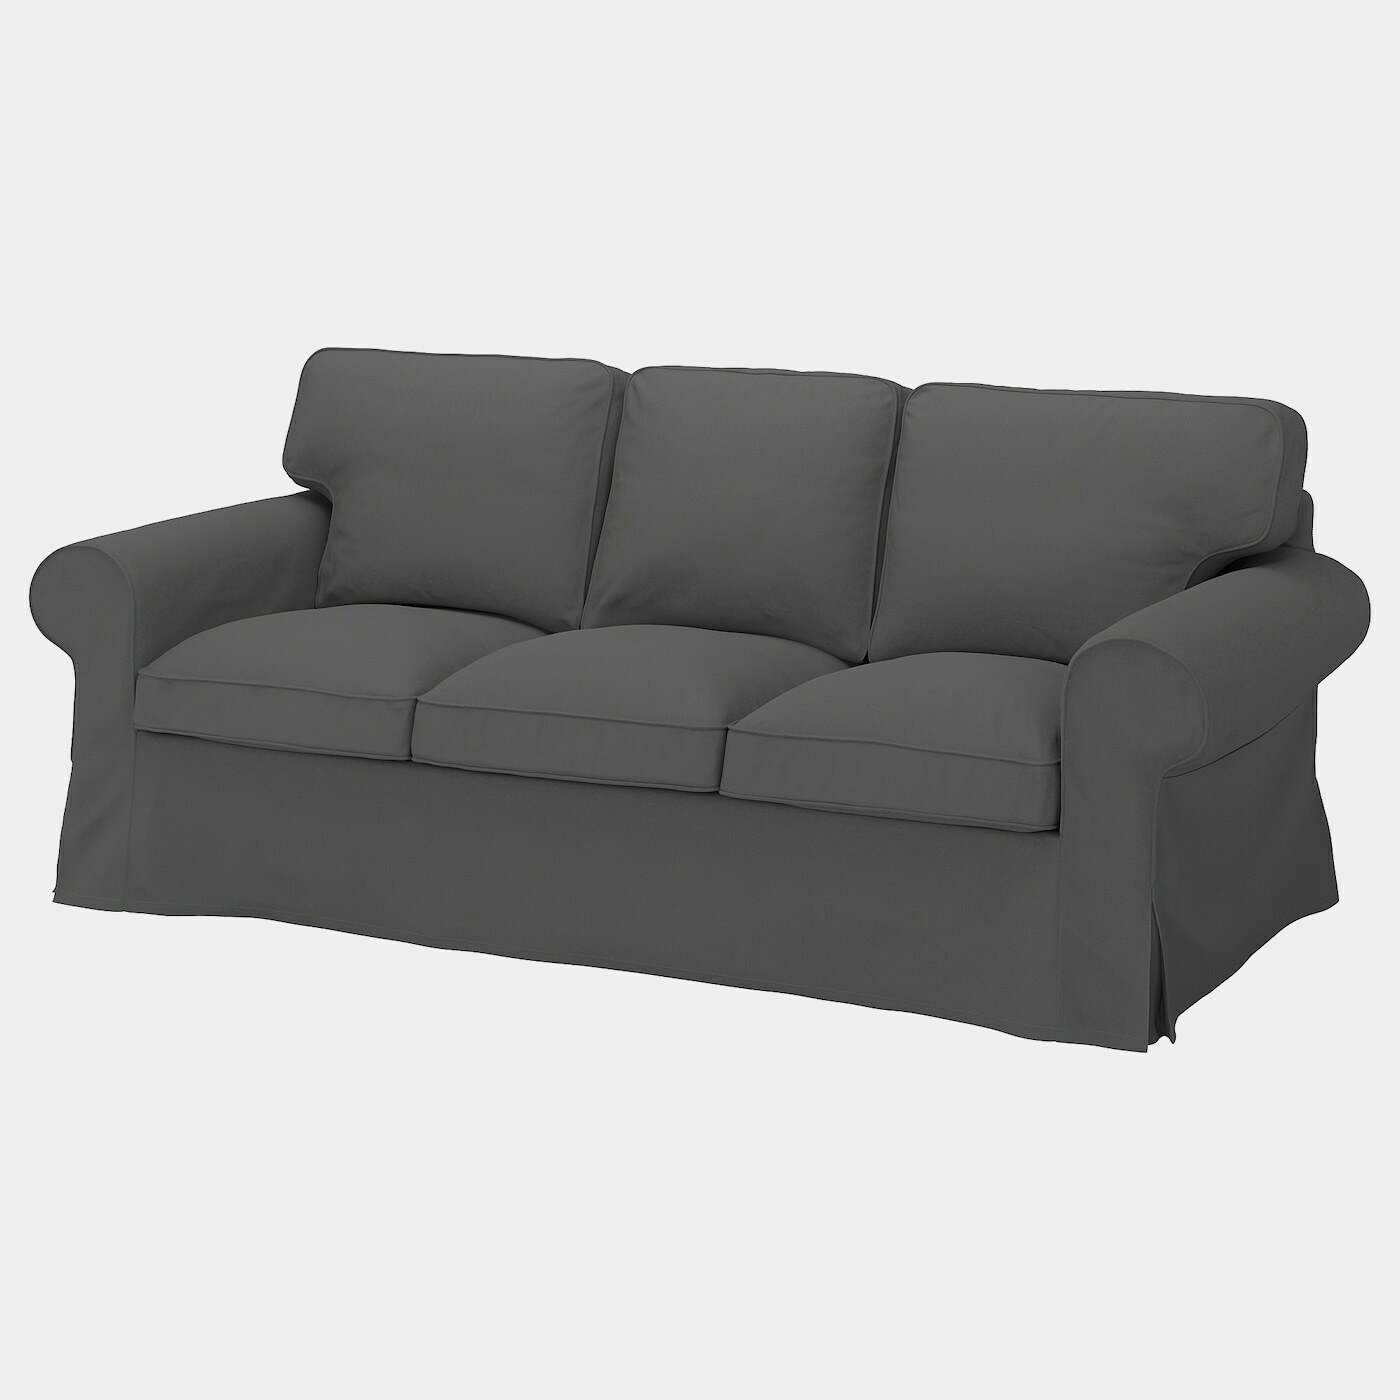 EKTORP 3er-Sofa  -  - Möbel Ideen für dein Zuhause von Home Trends. Möbel Trends von Social Media Influencer für dein Skandi Zuhause.